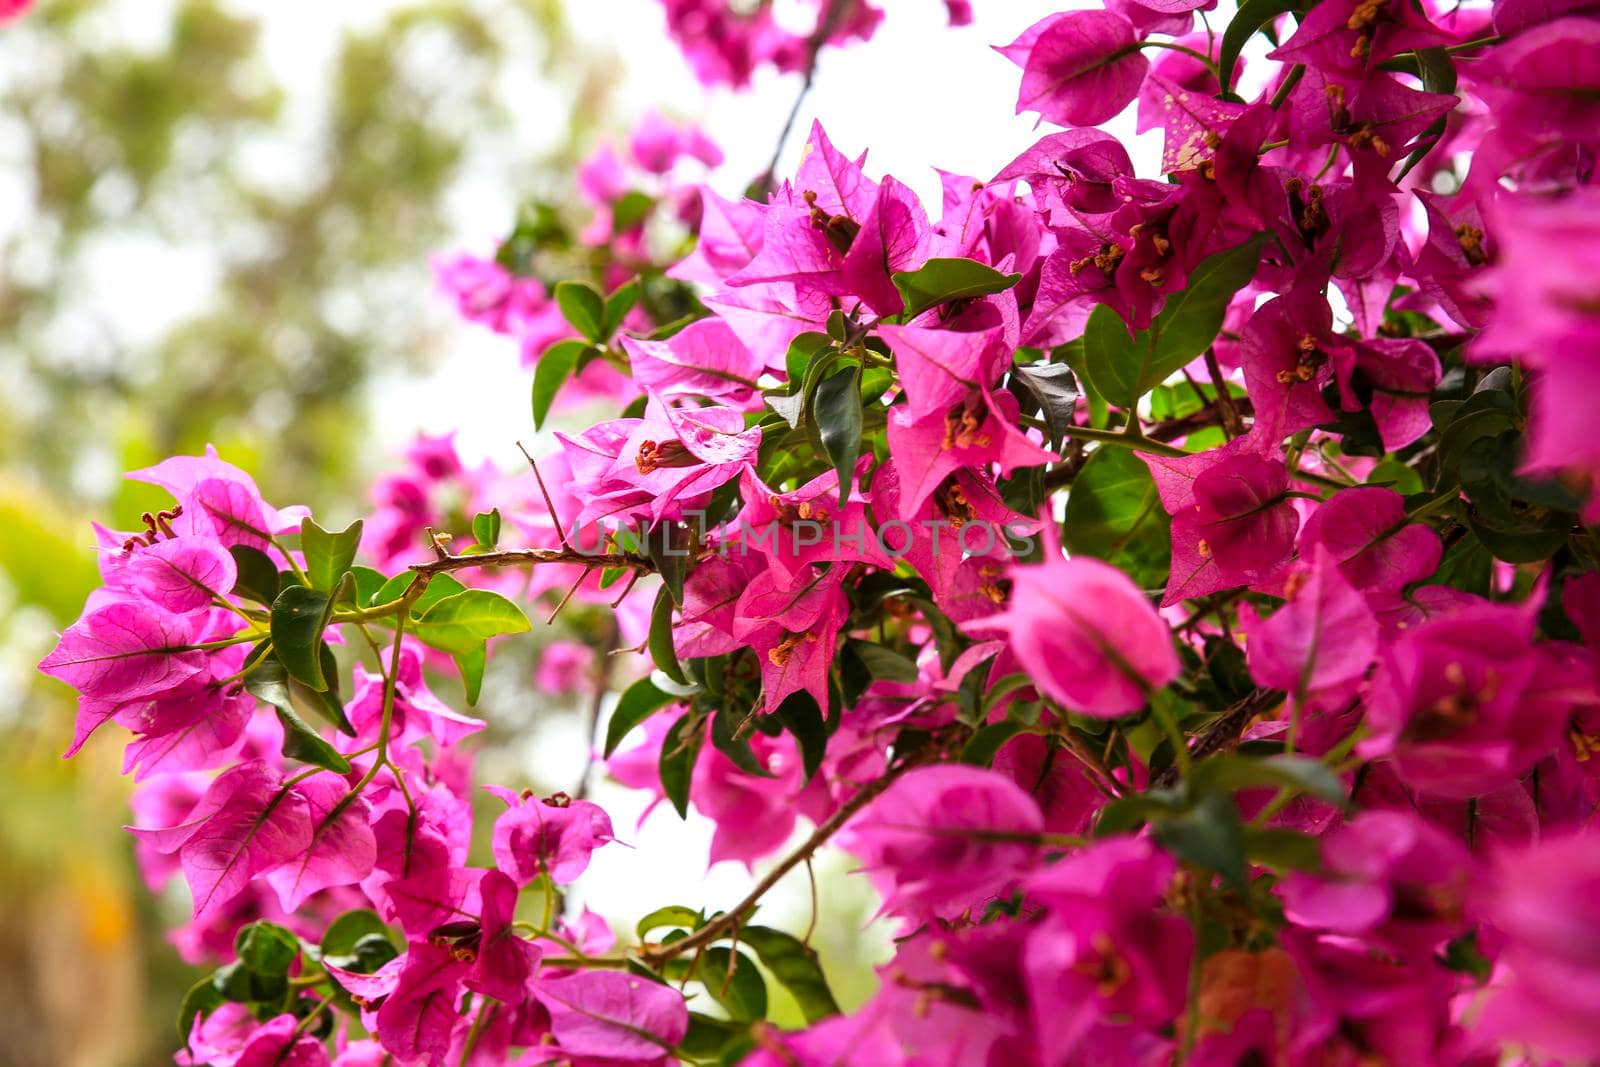 Pink bougainvillea glabra flowers in the garden by soniabonet